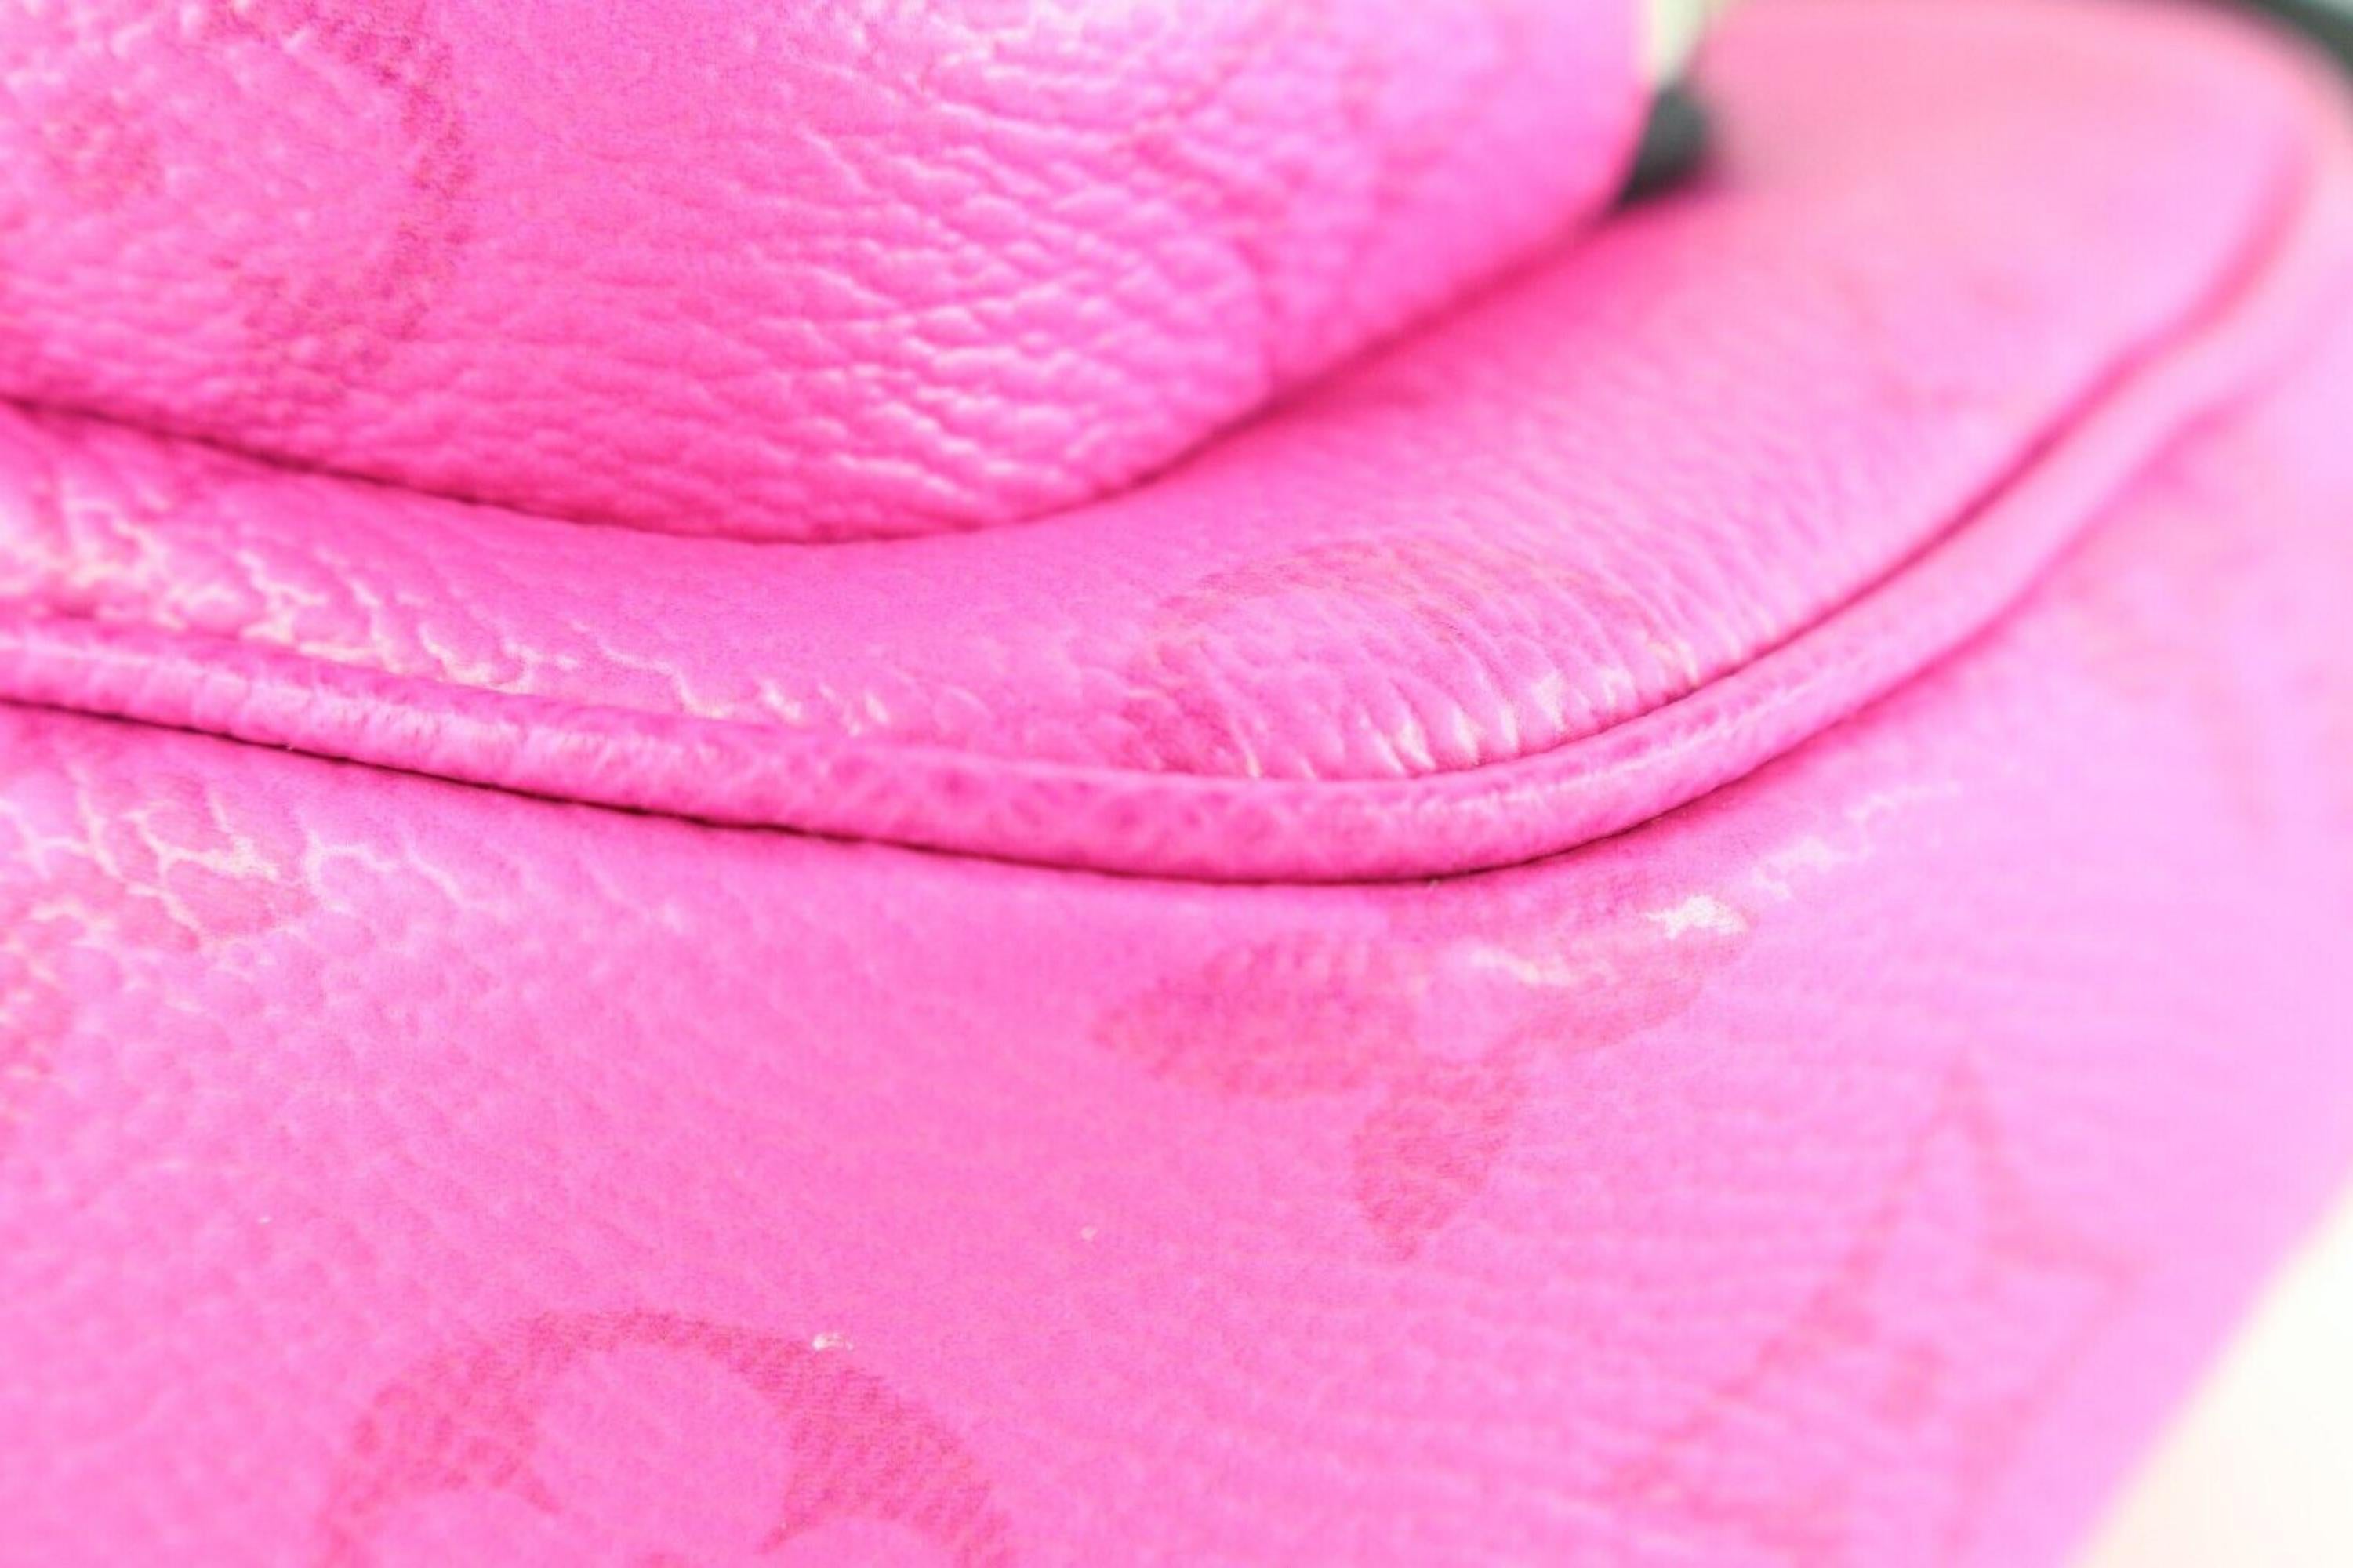 Louis Vuitton Taigarama Monogram Hot Pink Bumbag Outdoor Crossbody 2LV0124 3